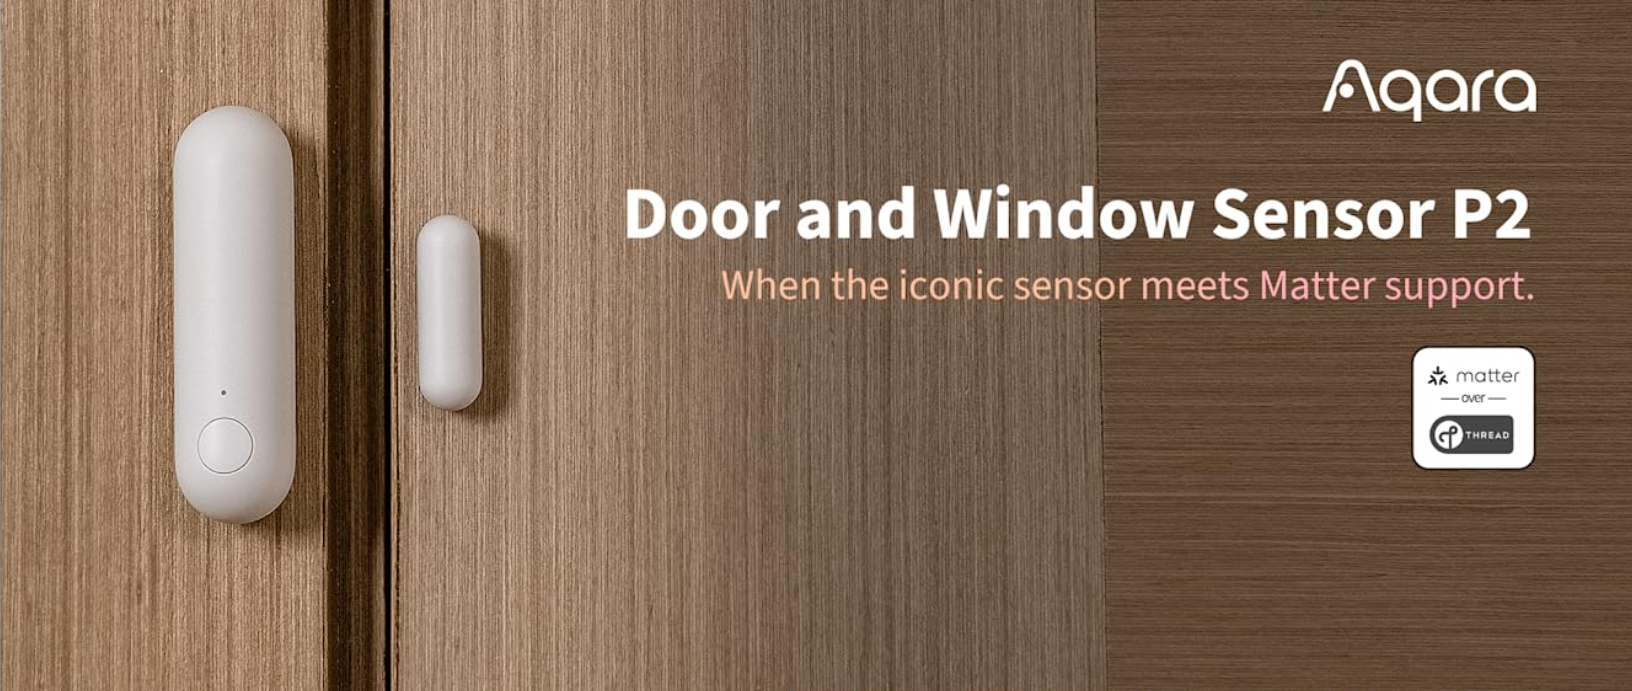 Cảm Biến Mở Cửa Aqara Door And Window Sensor P2